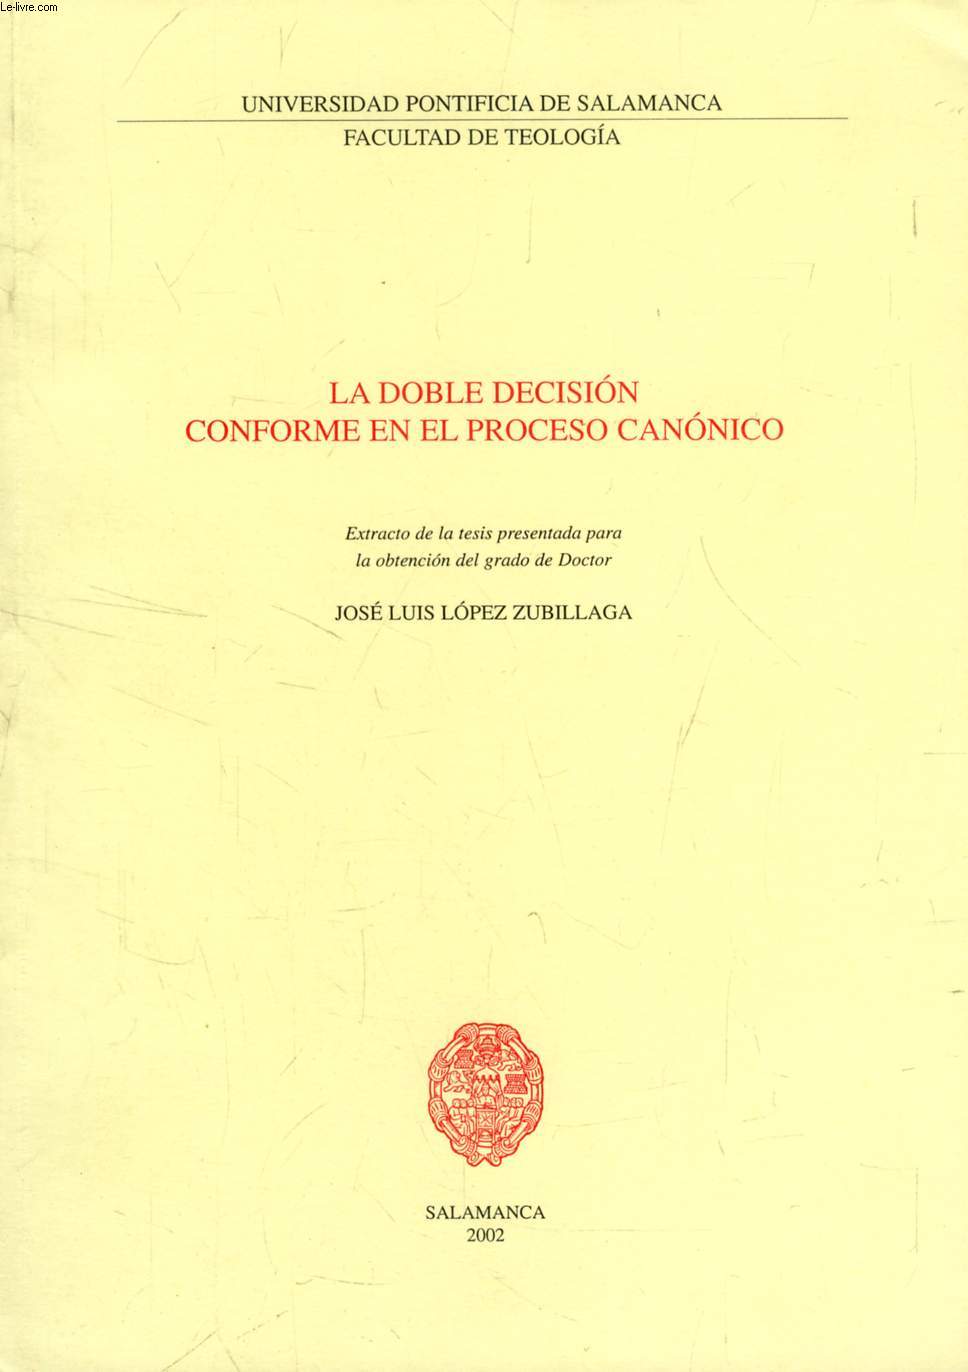 LA DOBLE DECISION CONFORME EN EL PROCESO CANONICO (EXTRACTO DE LA TESIS)